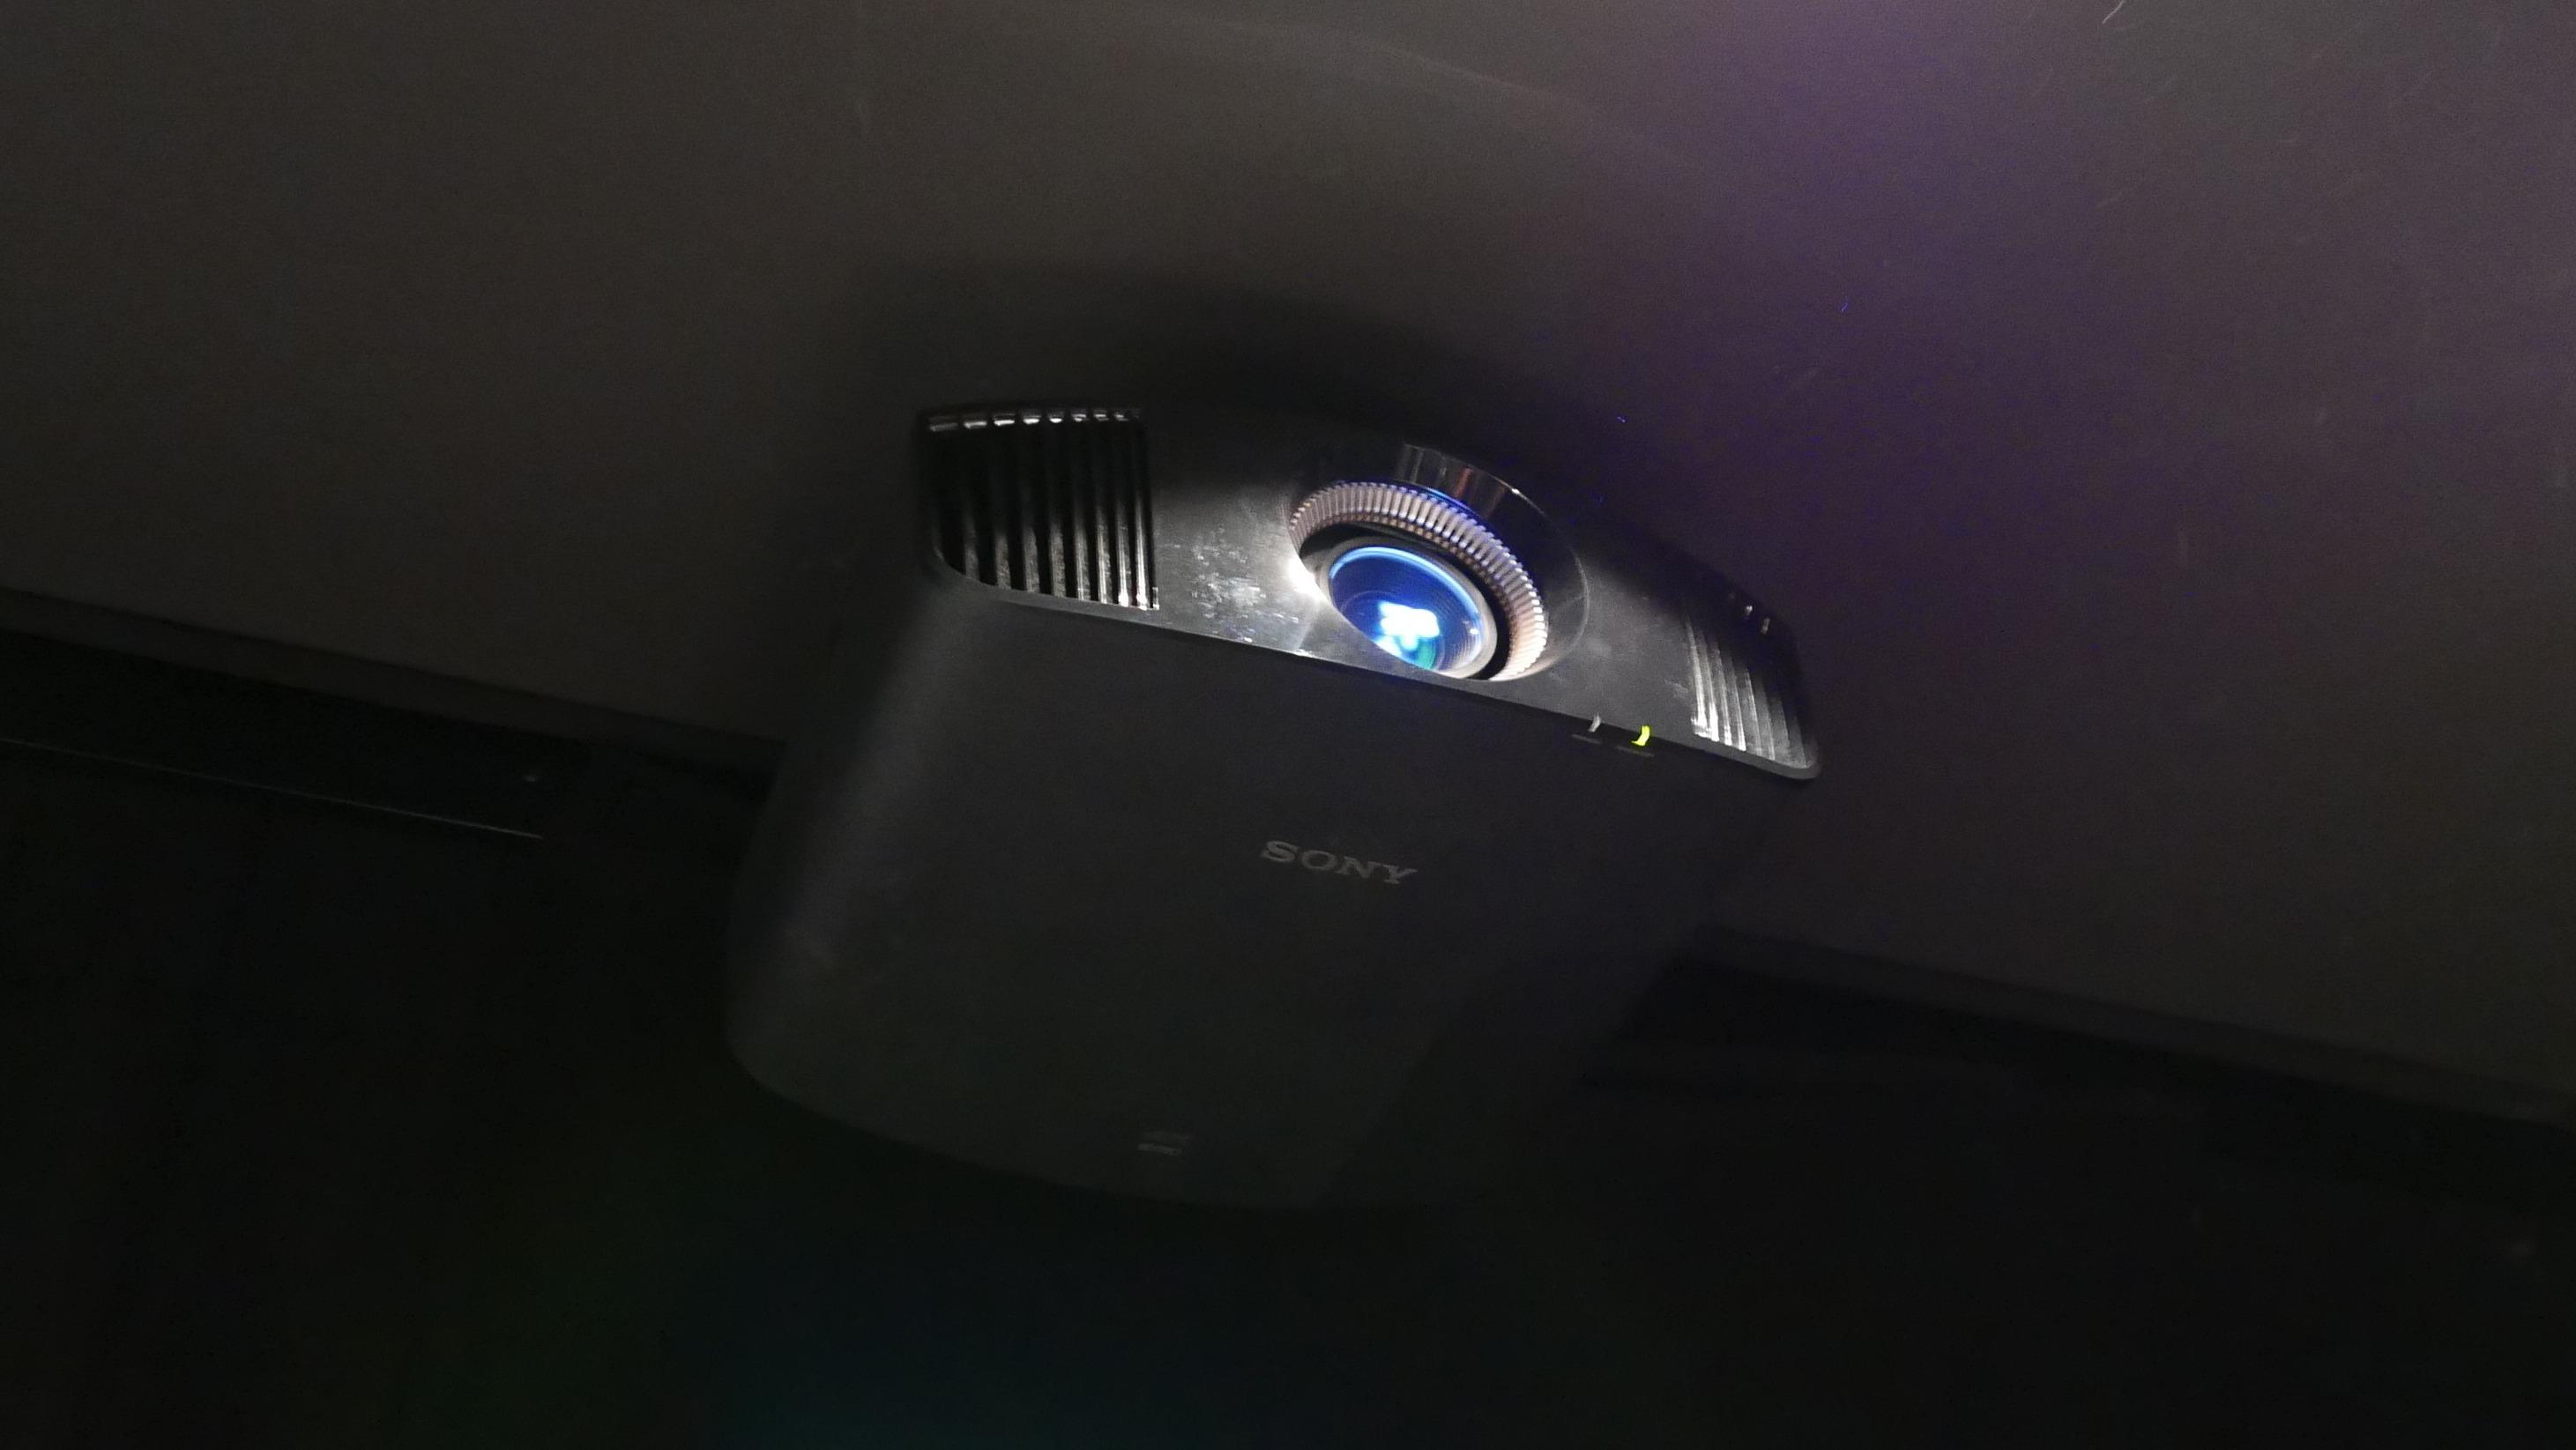 Sonys nye 4K-projektor med HDR imponerer. Foto: Ole Henrik Johansen / Tek.no